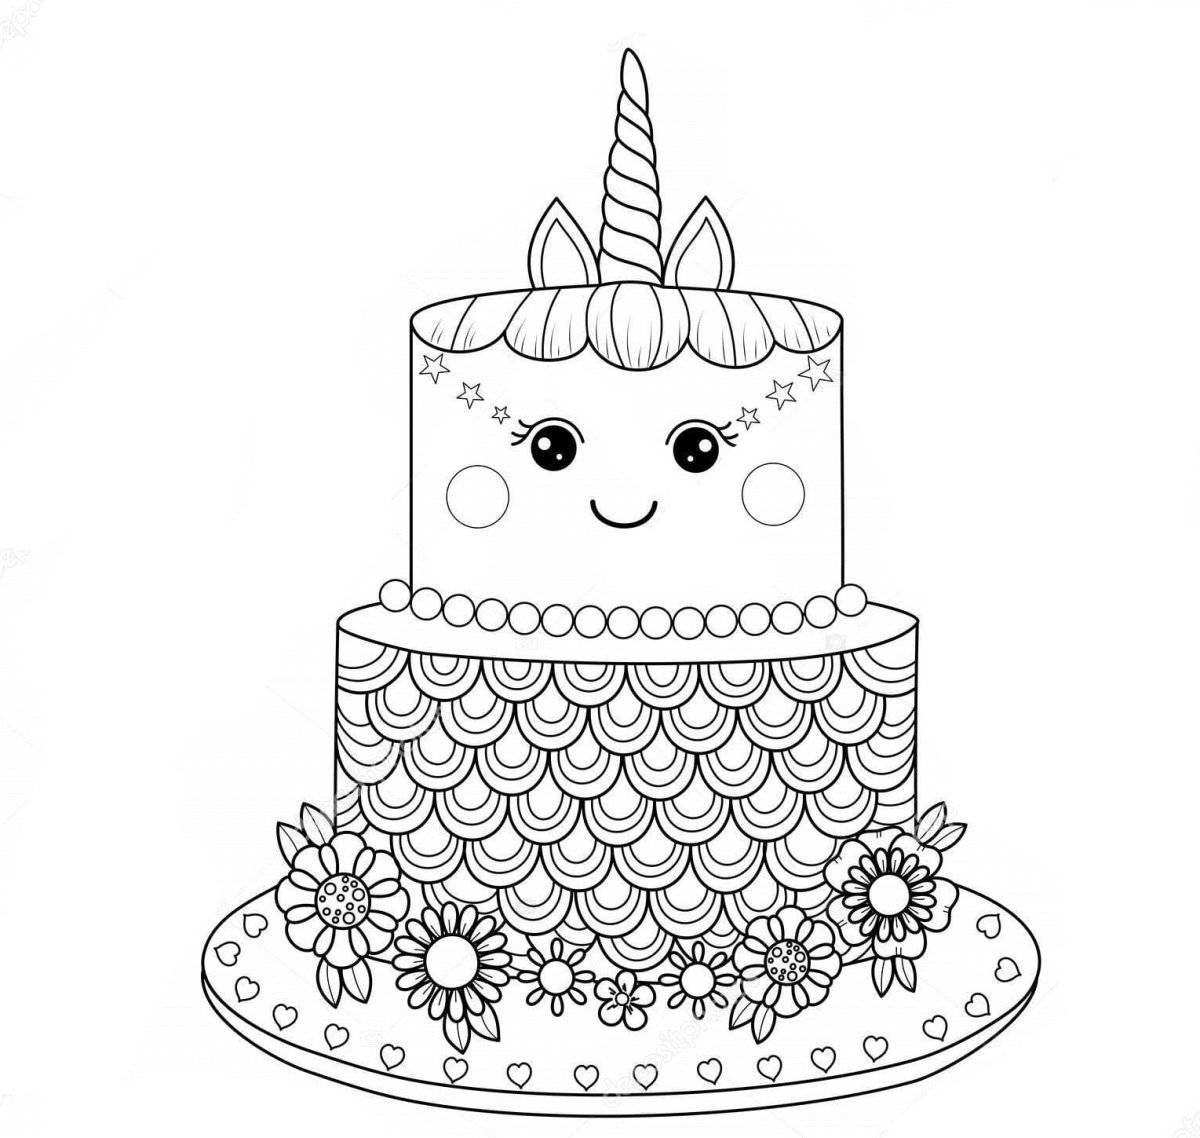 Рисуем праздничный торт | Раскраска торта, Раскраски, Женские аксессуары